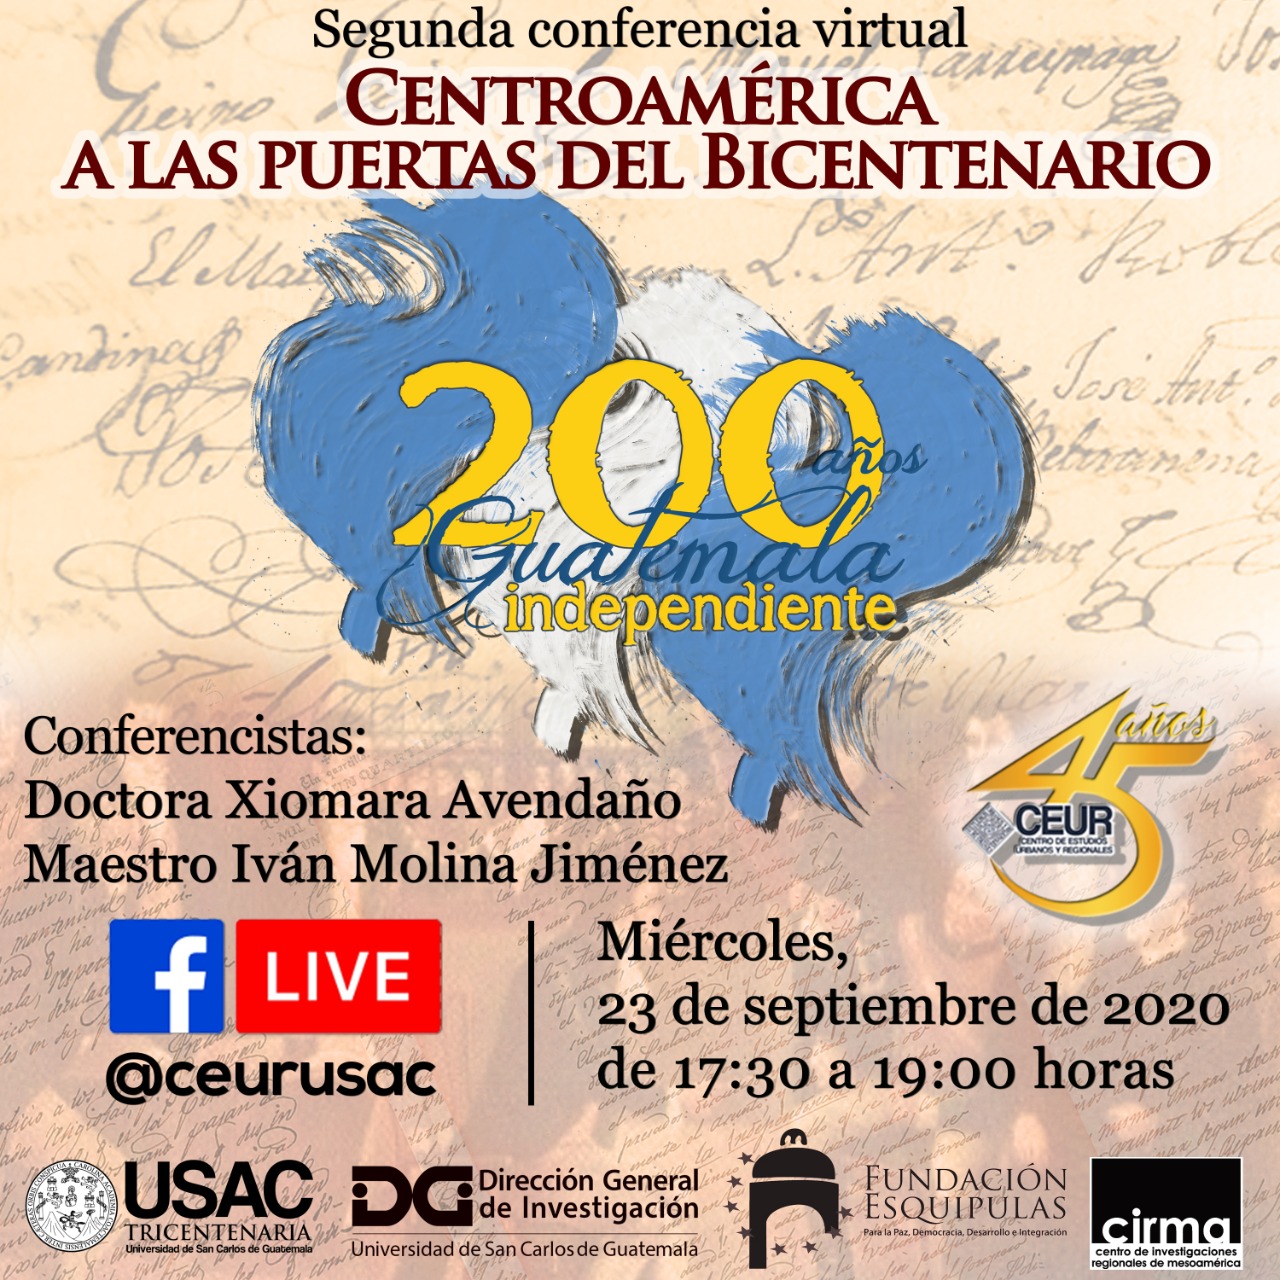 SEGUNDA CONFERENCIA Centroamérica a las puertas del bicentenario #CEUR